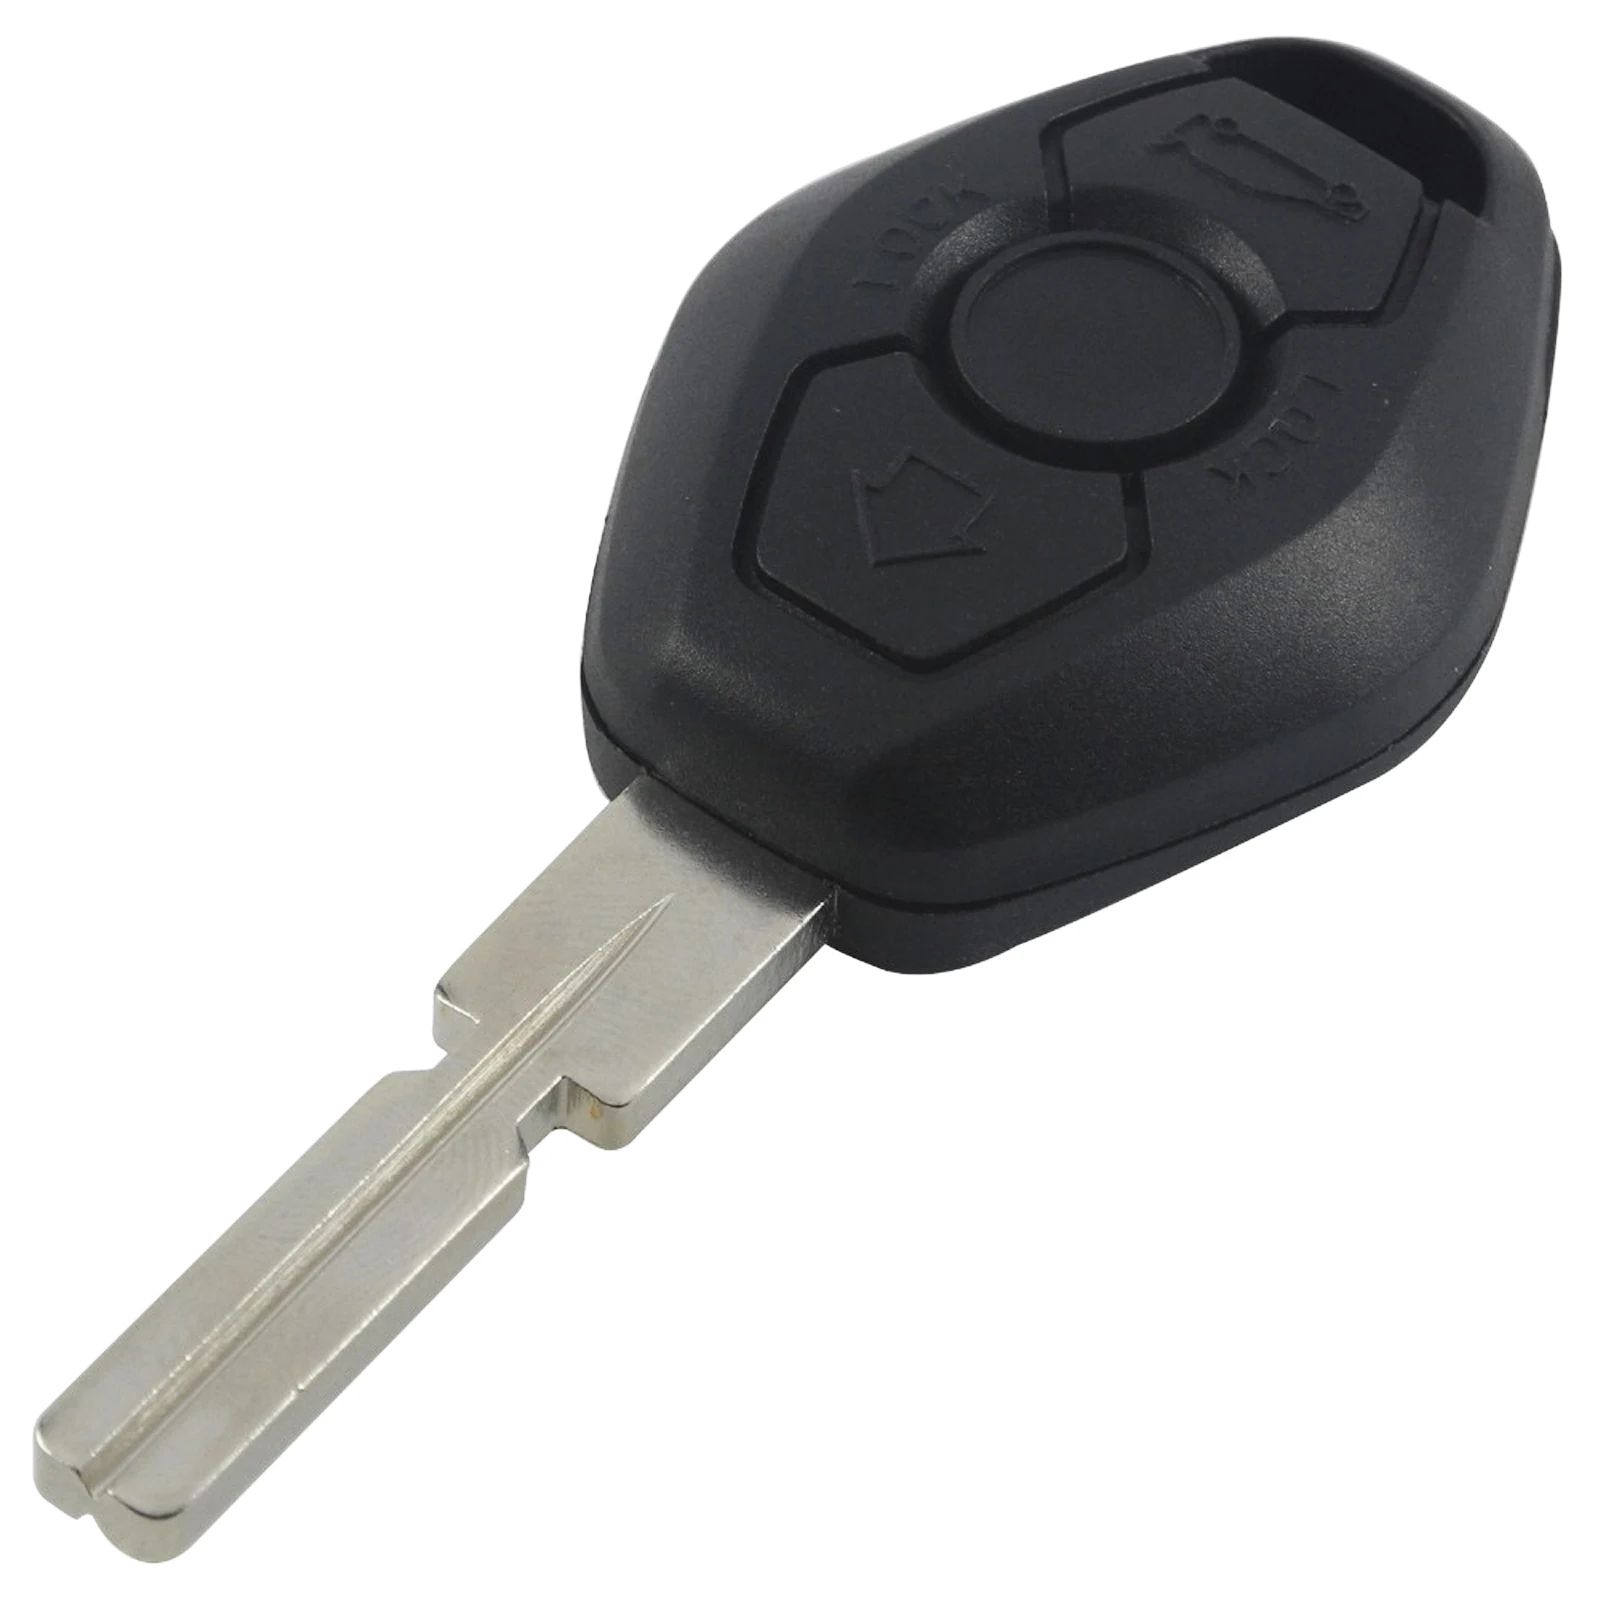 Jingyuqin удаленного Замена Автомобильный брелок для ключей с кожаной крышкой чехол КРЫШКА ДЛЯ BMW 3 5 7 серия Z3 Z4 X3 X5 M5 325i E38 E39 E46 3 кнопки - Количество кнопок: HU58 Blade